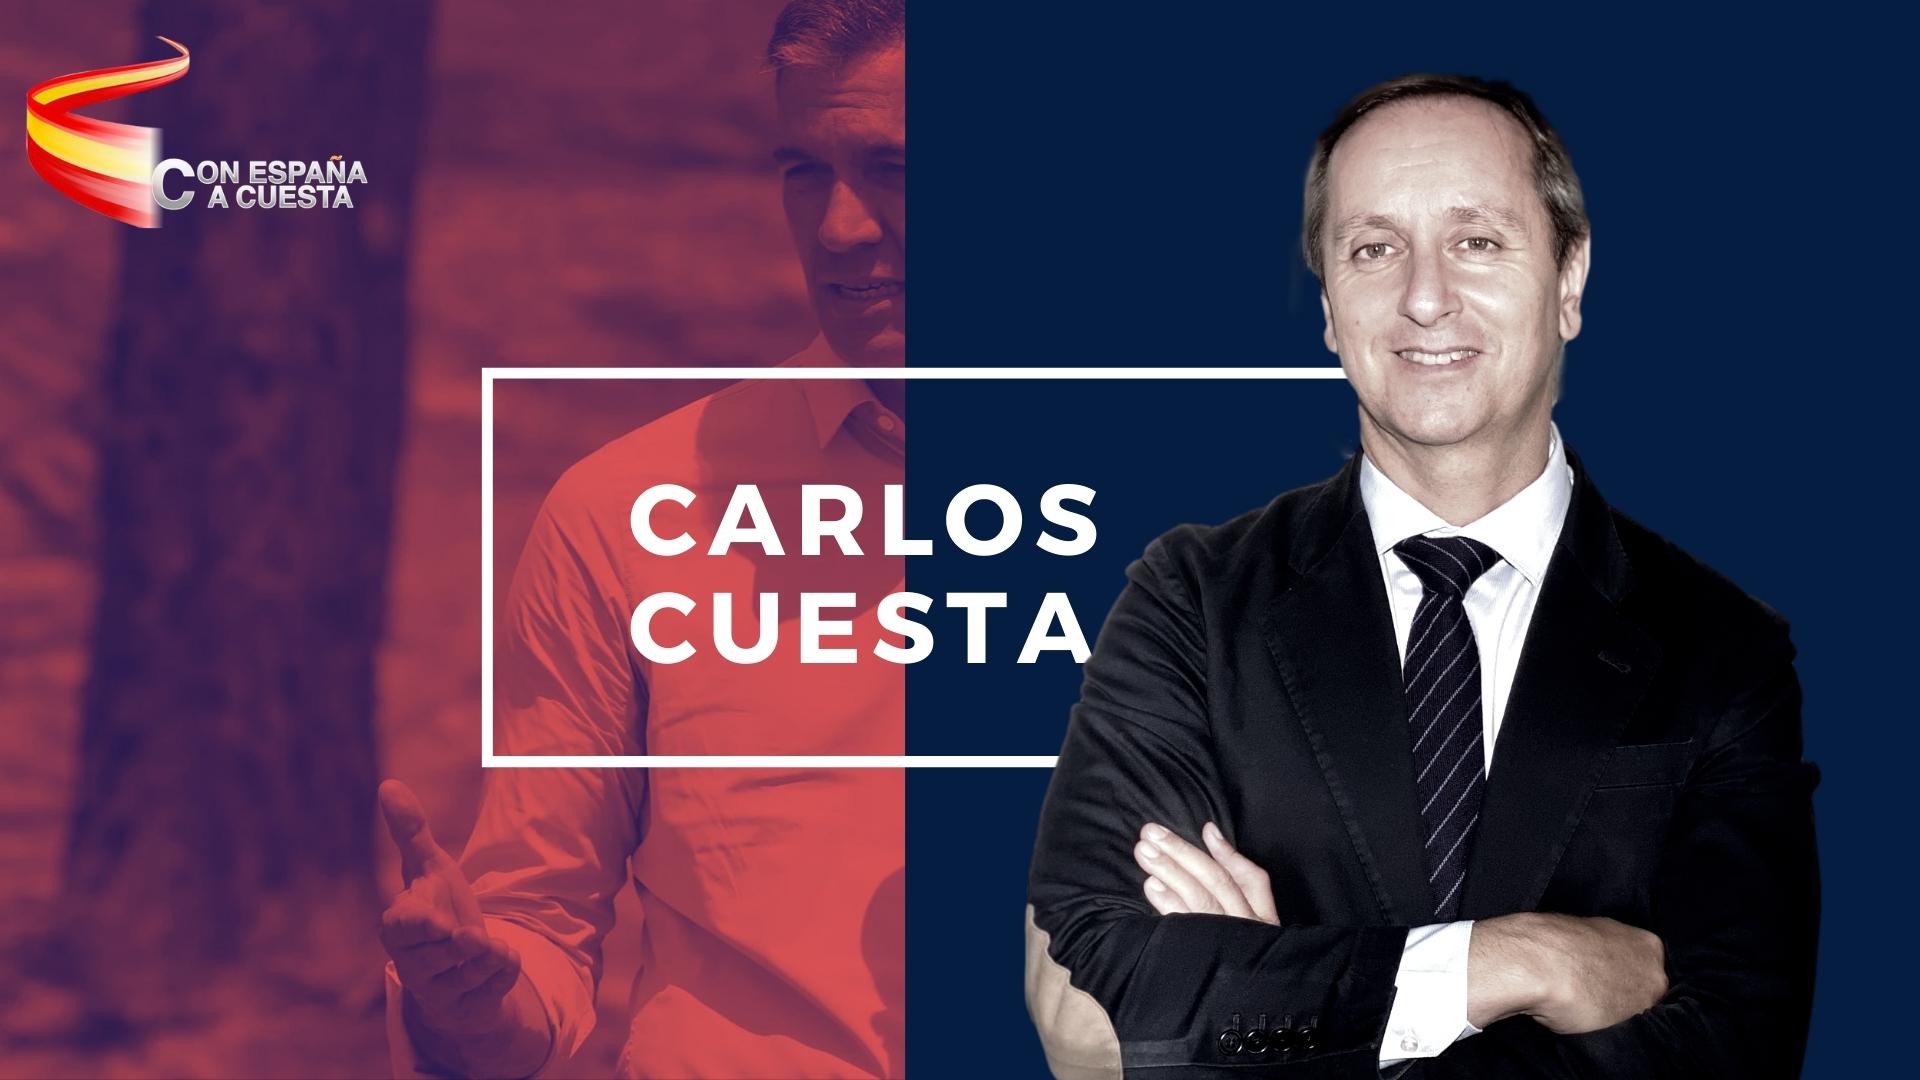 CARLOS CUESTA – COMO SÁNCHEZ QUIERE PROSTITUIR EL CONSEJO GENERAL DEL PODER JUDICIAL, LAS 5 CLAVES